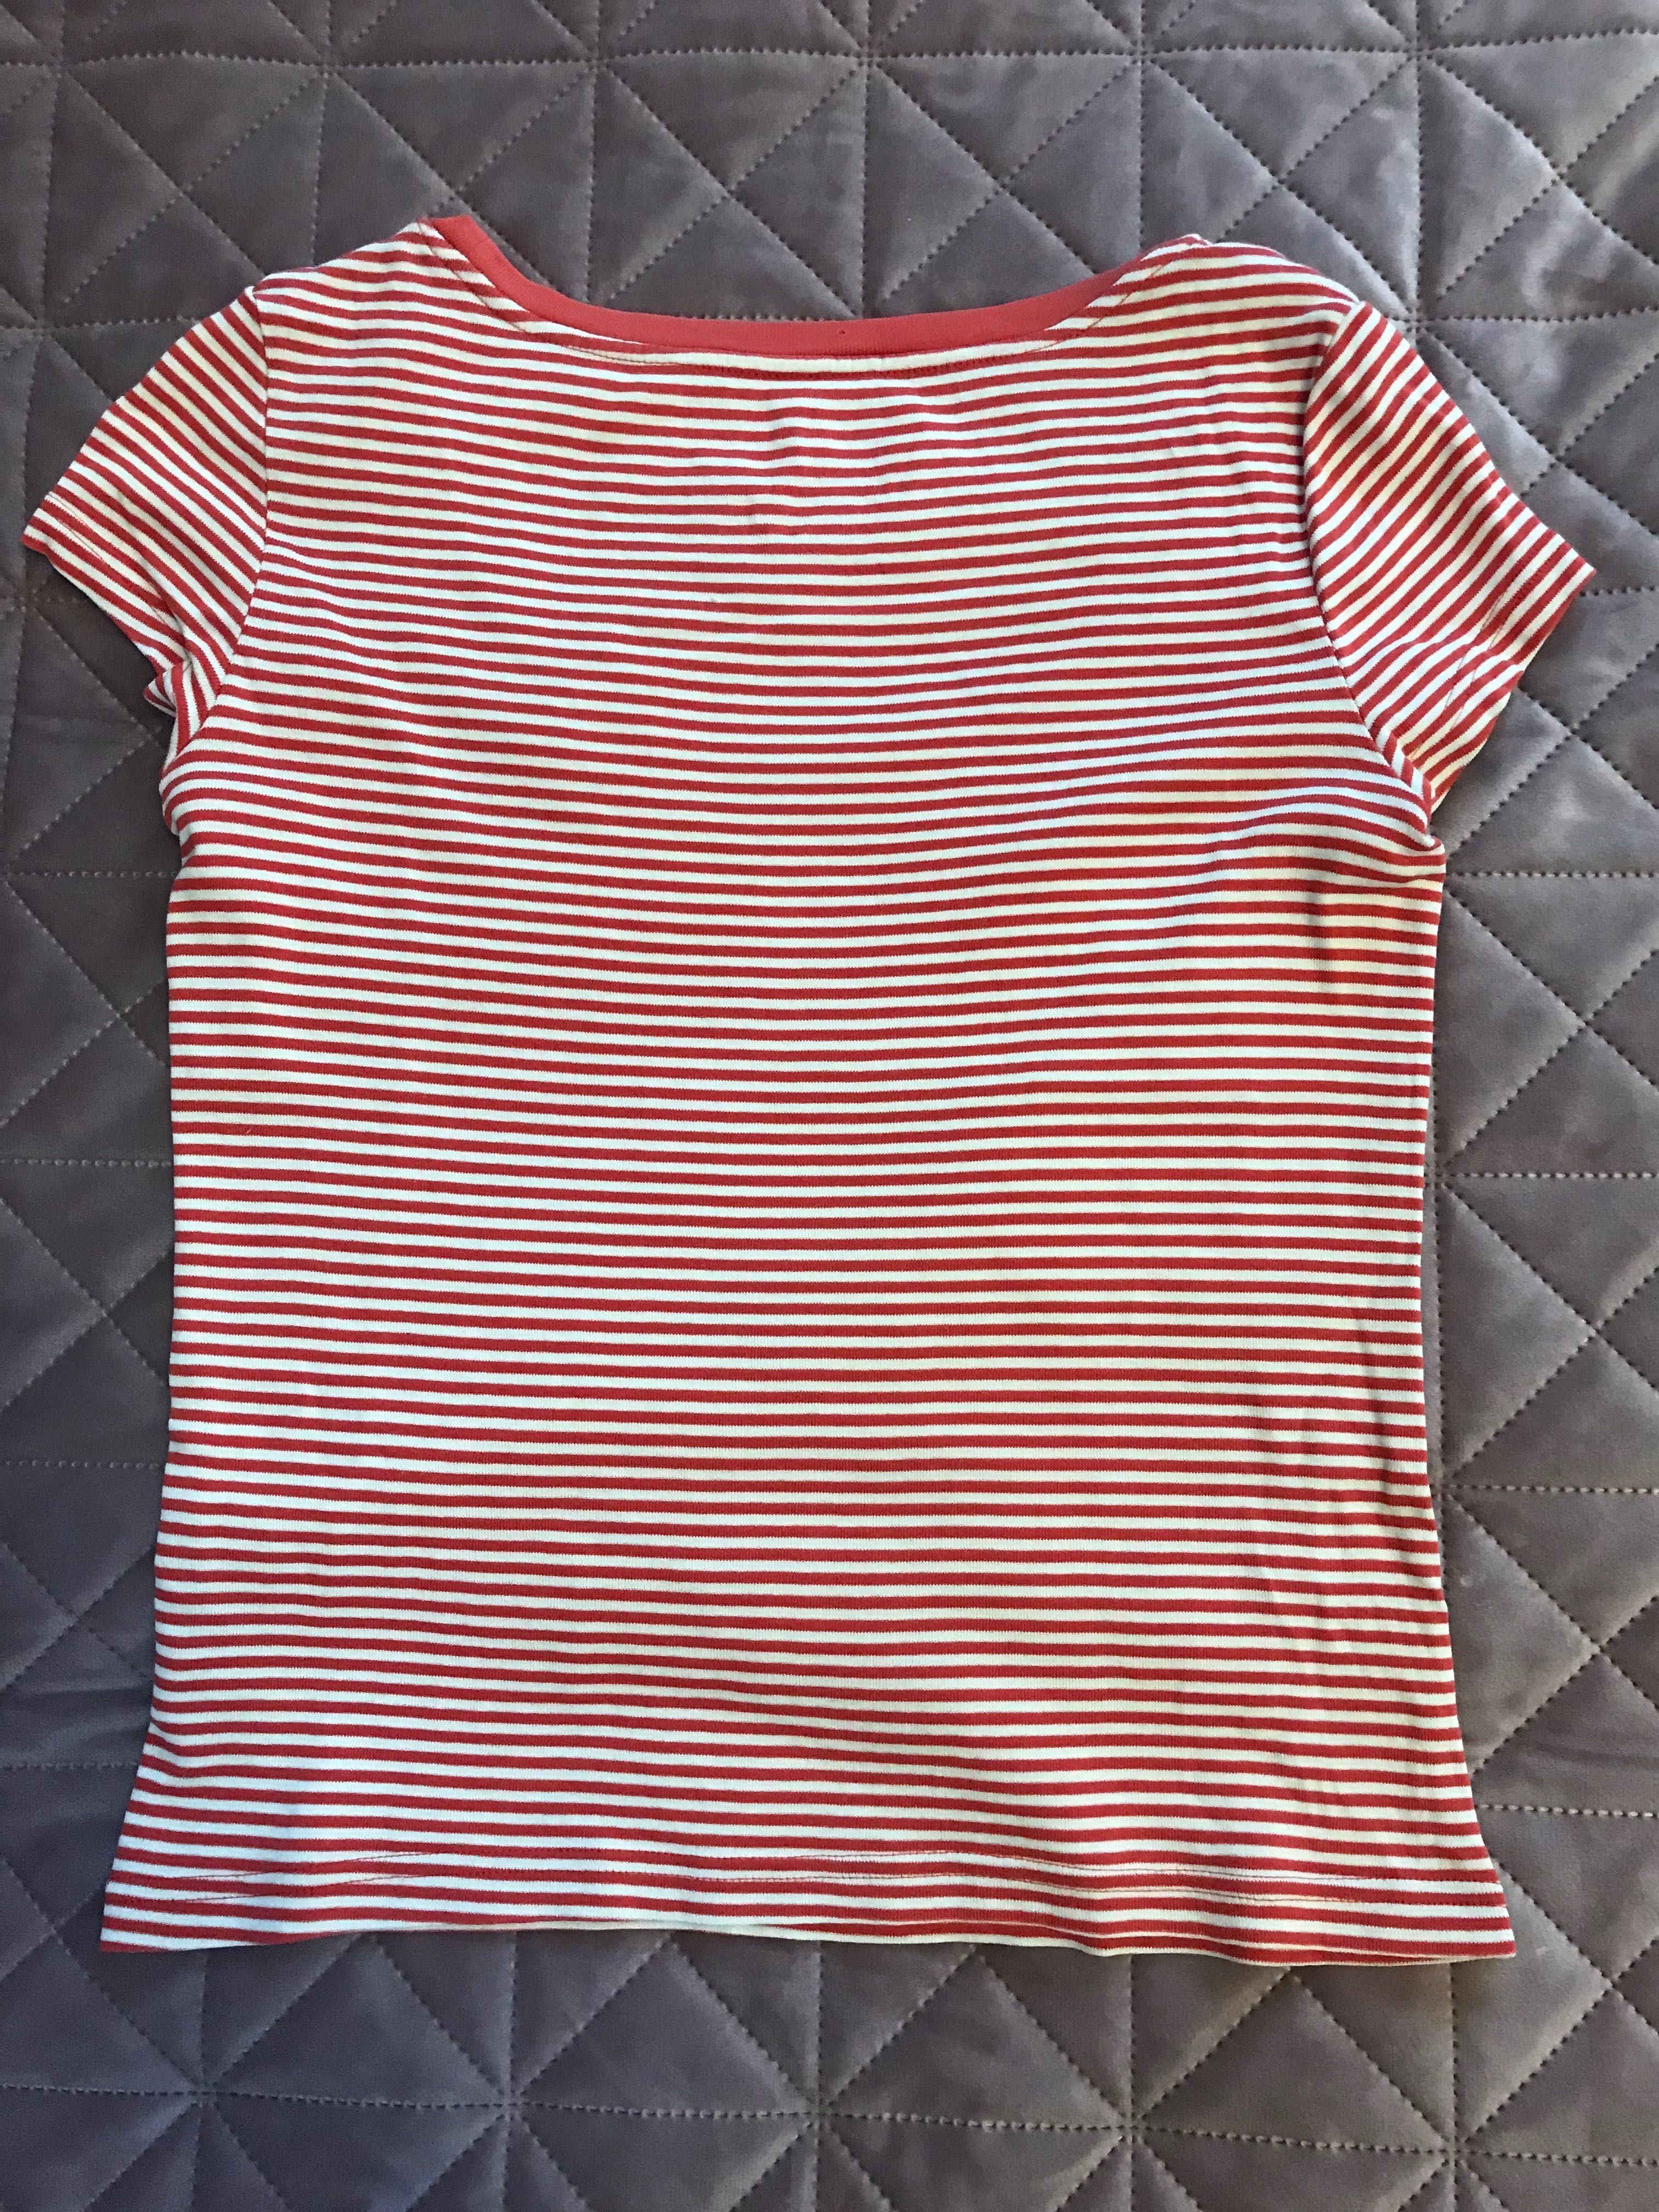 Koszulka T-shirt z krótkim rękawem w paski biało czerwona r. S